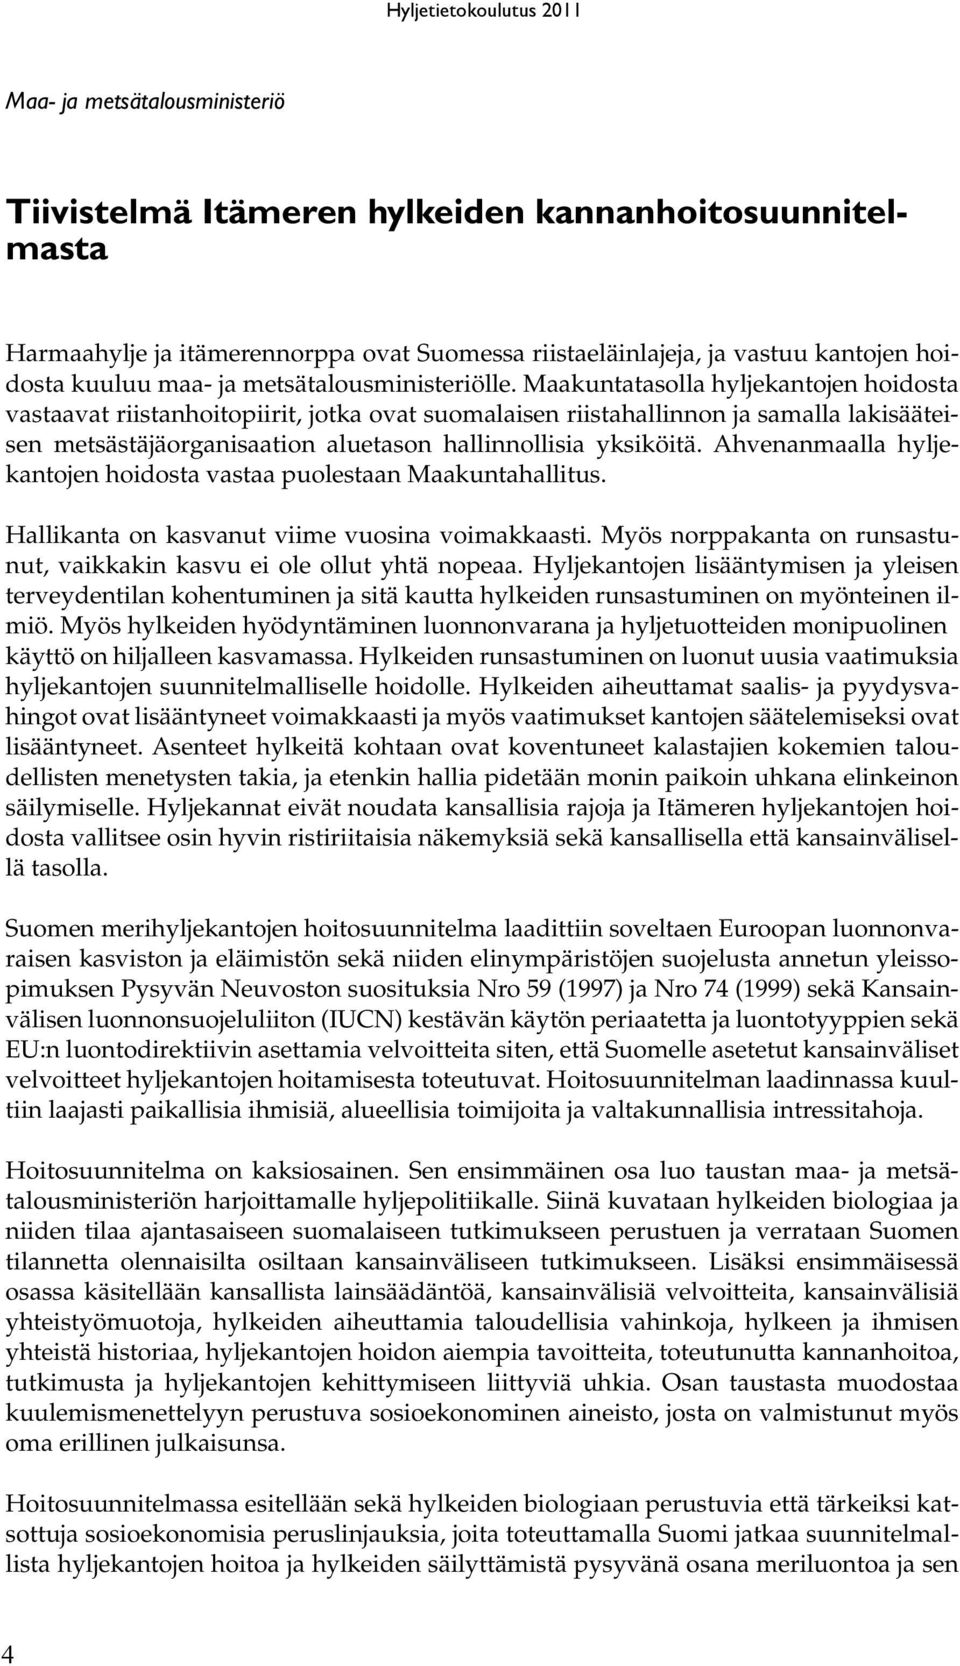 Maakuntatasolla hyljekantojen hoidosta vastaavat riistanhoitopiirit, jotka ovat suomalaisen riistahallinnon ja samalla lakisääteisen metsästäjäorganisaation aluetason hallinnollisia yksiköitä.